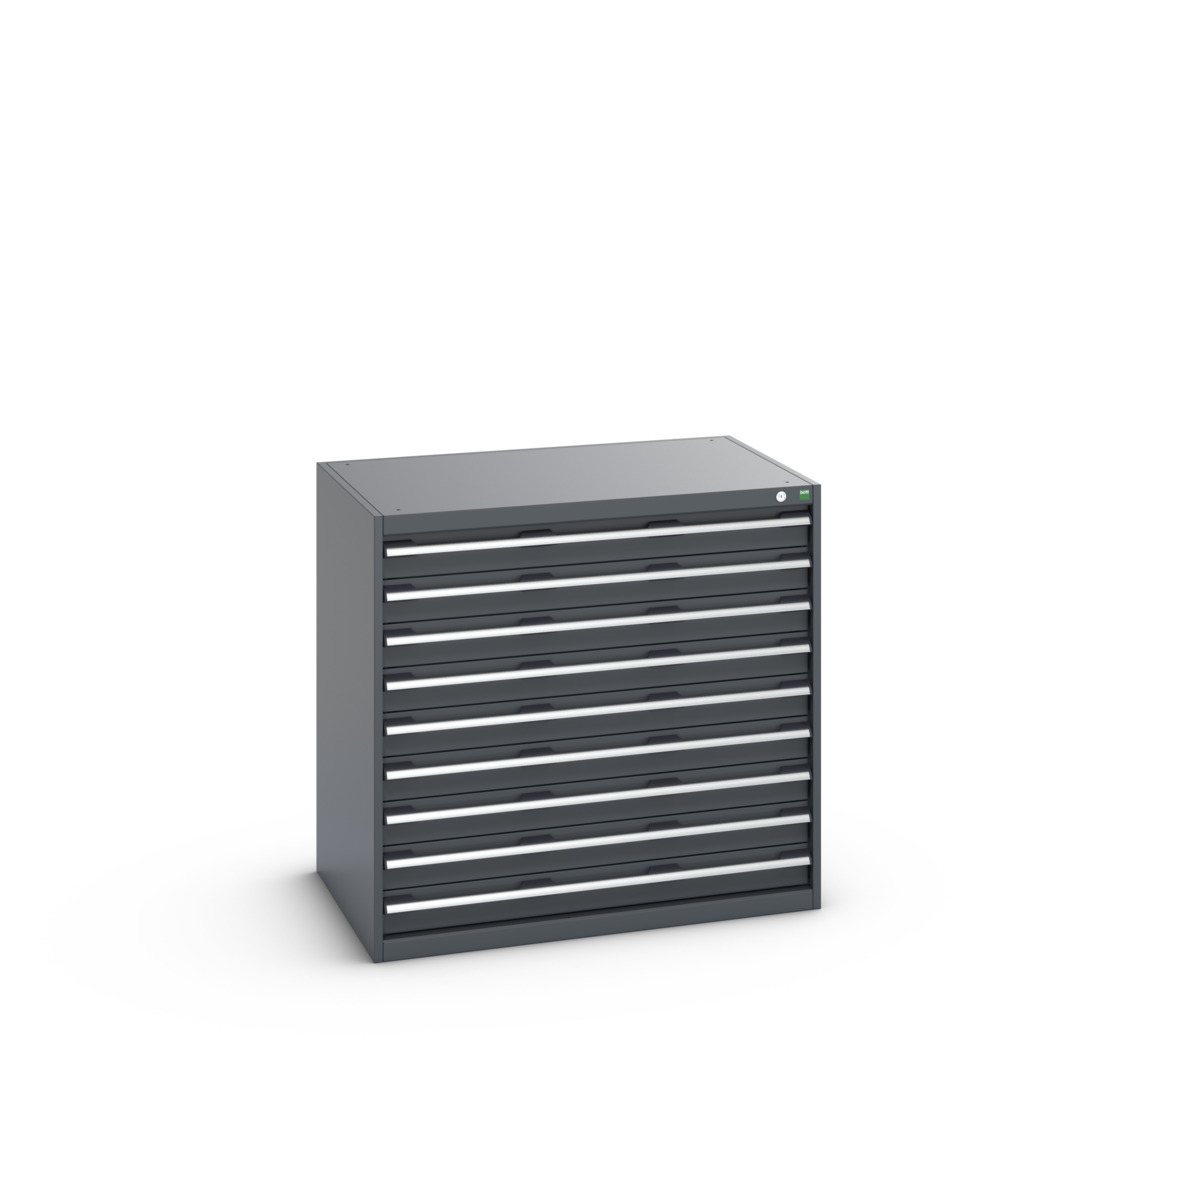 40029028.77V - cubio drawer cabinet